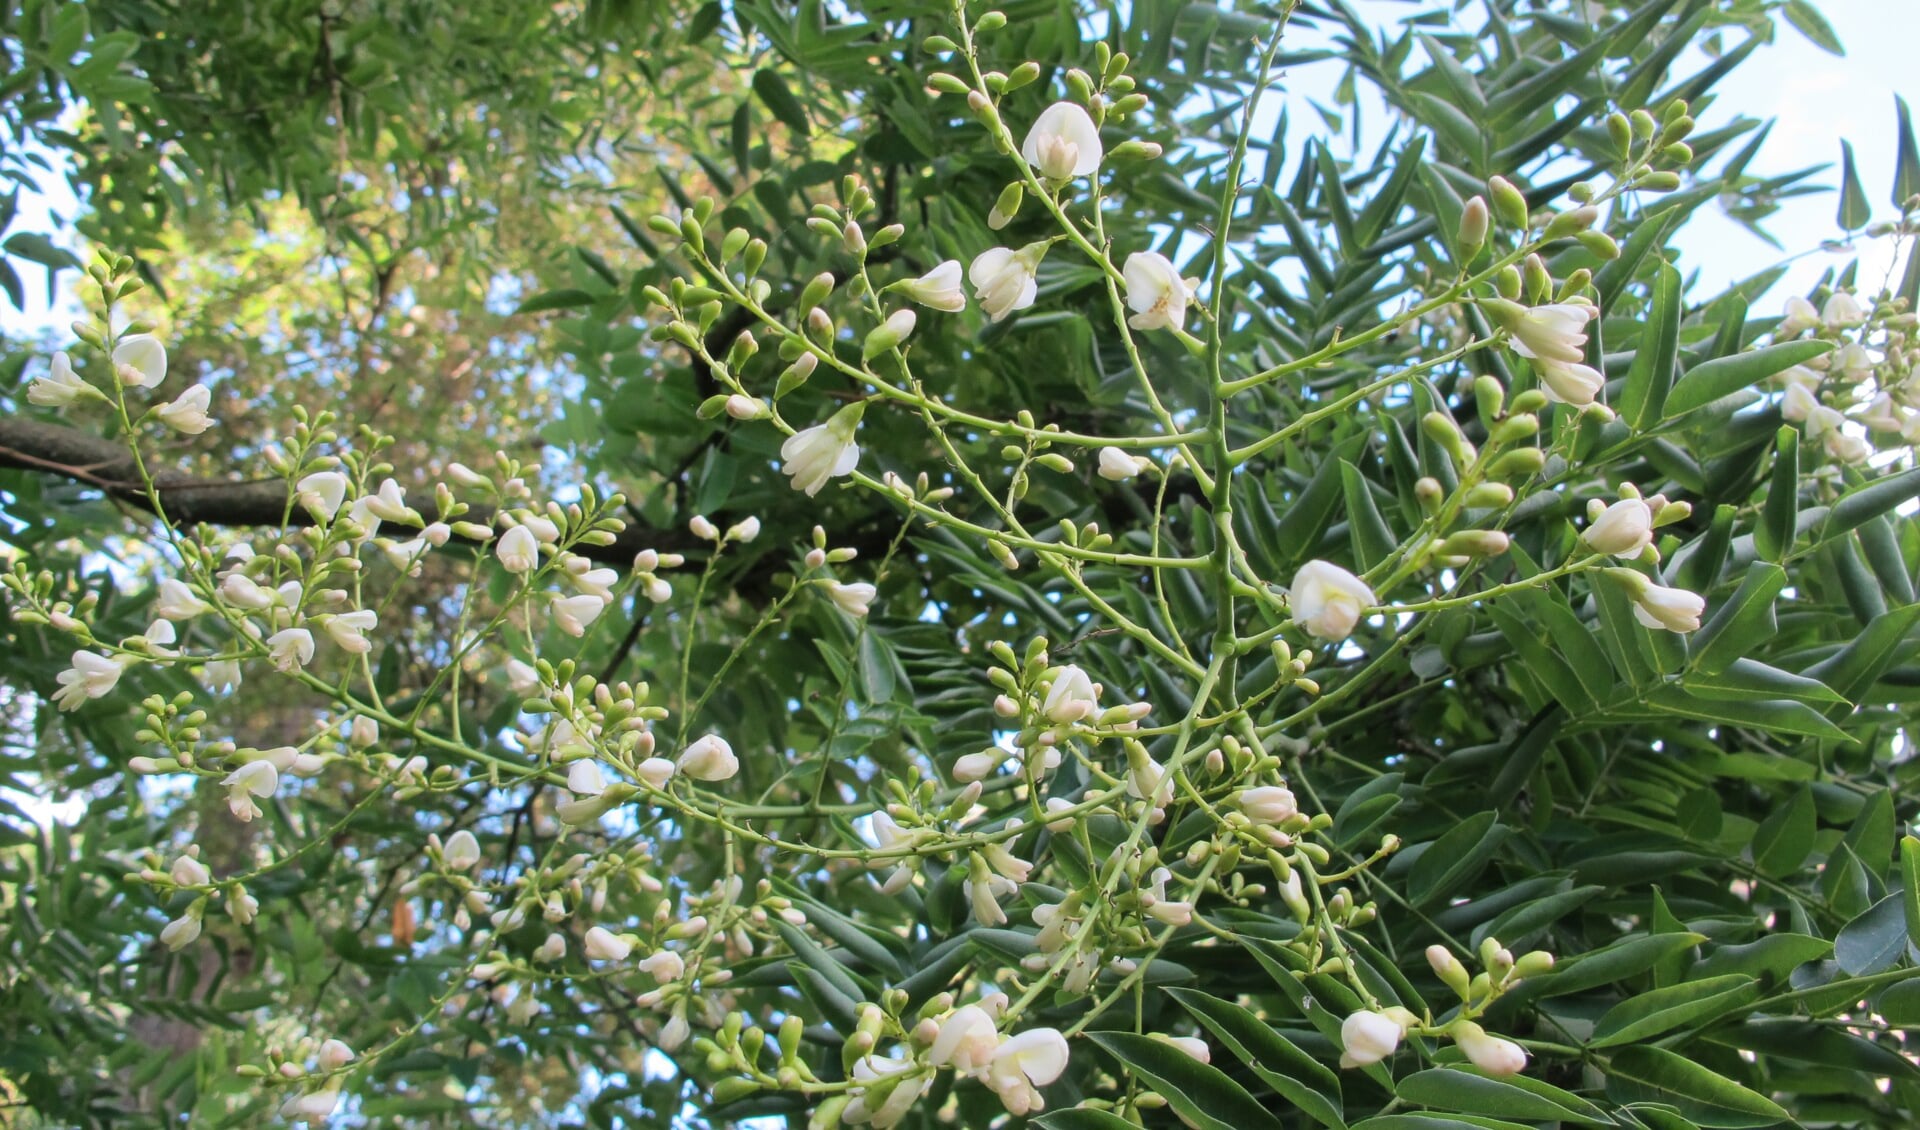 De honingboom dateert uit 1832 en bloeit niet iedere jaar. Foto: PR